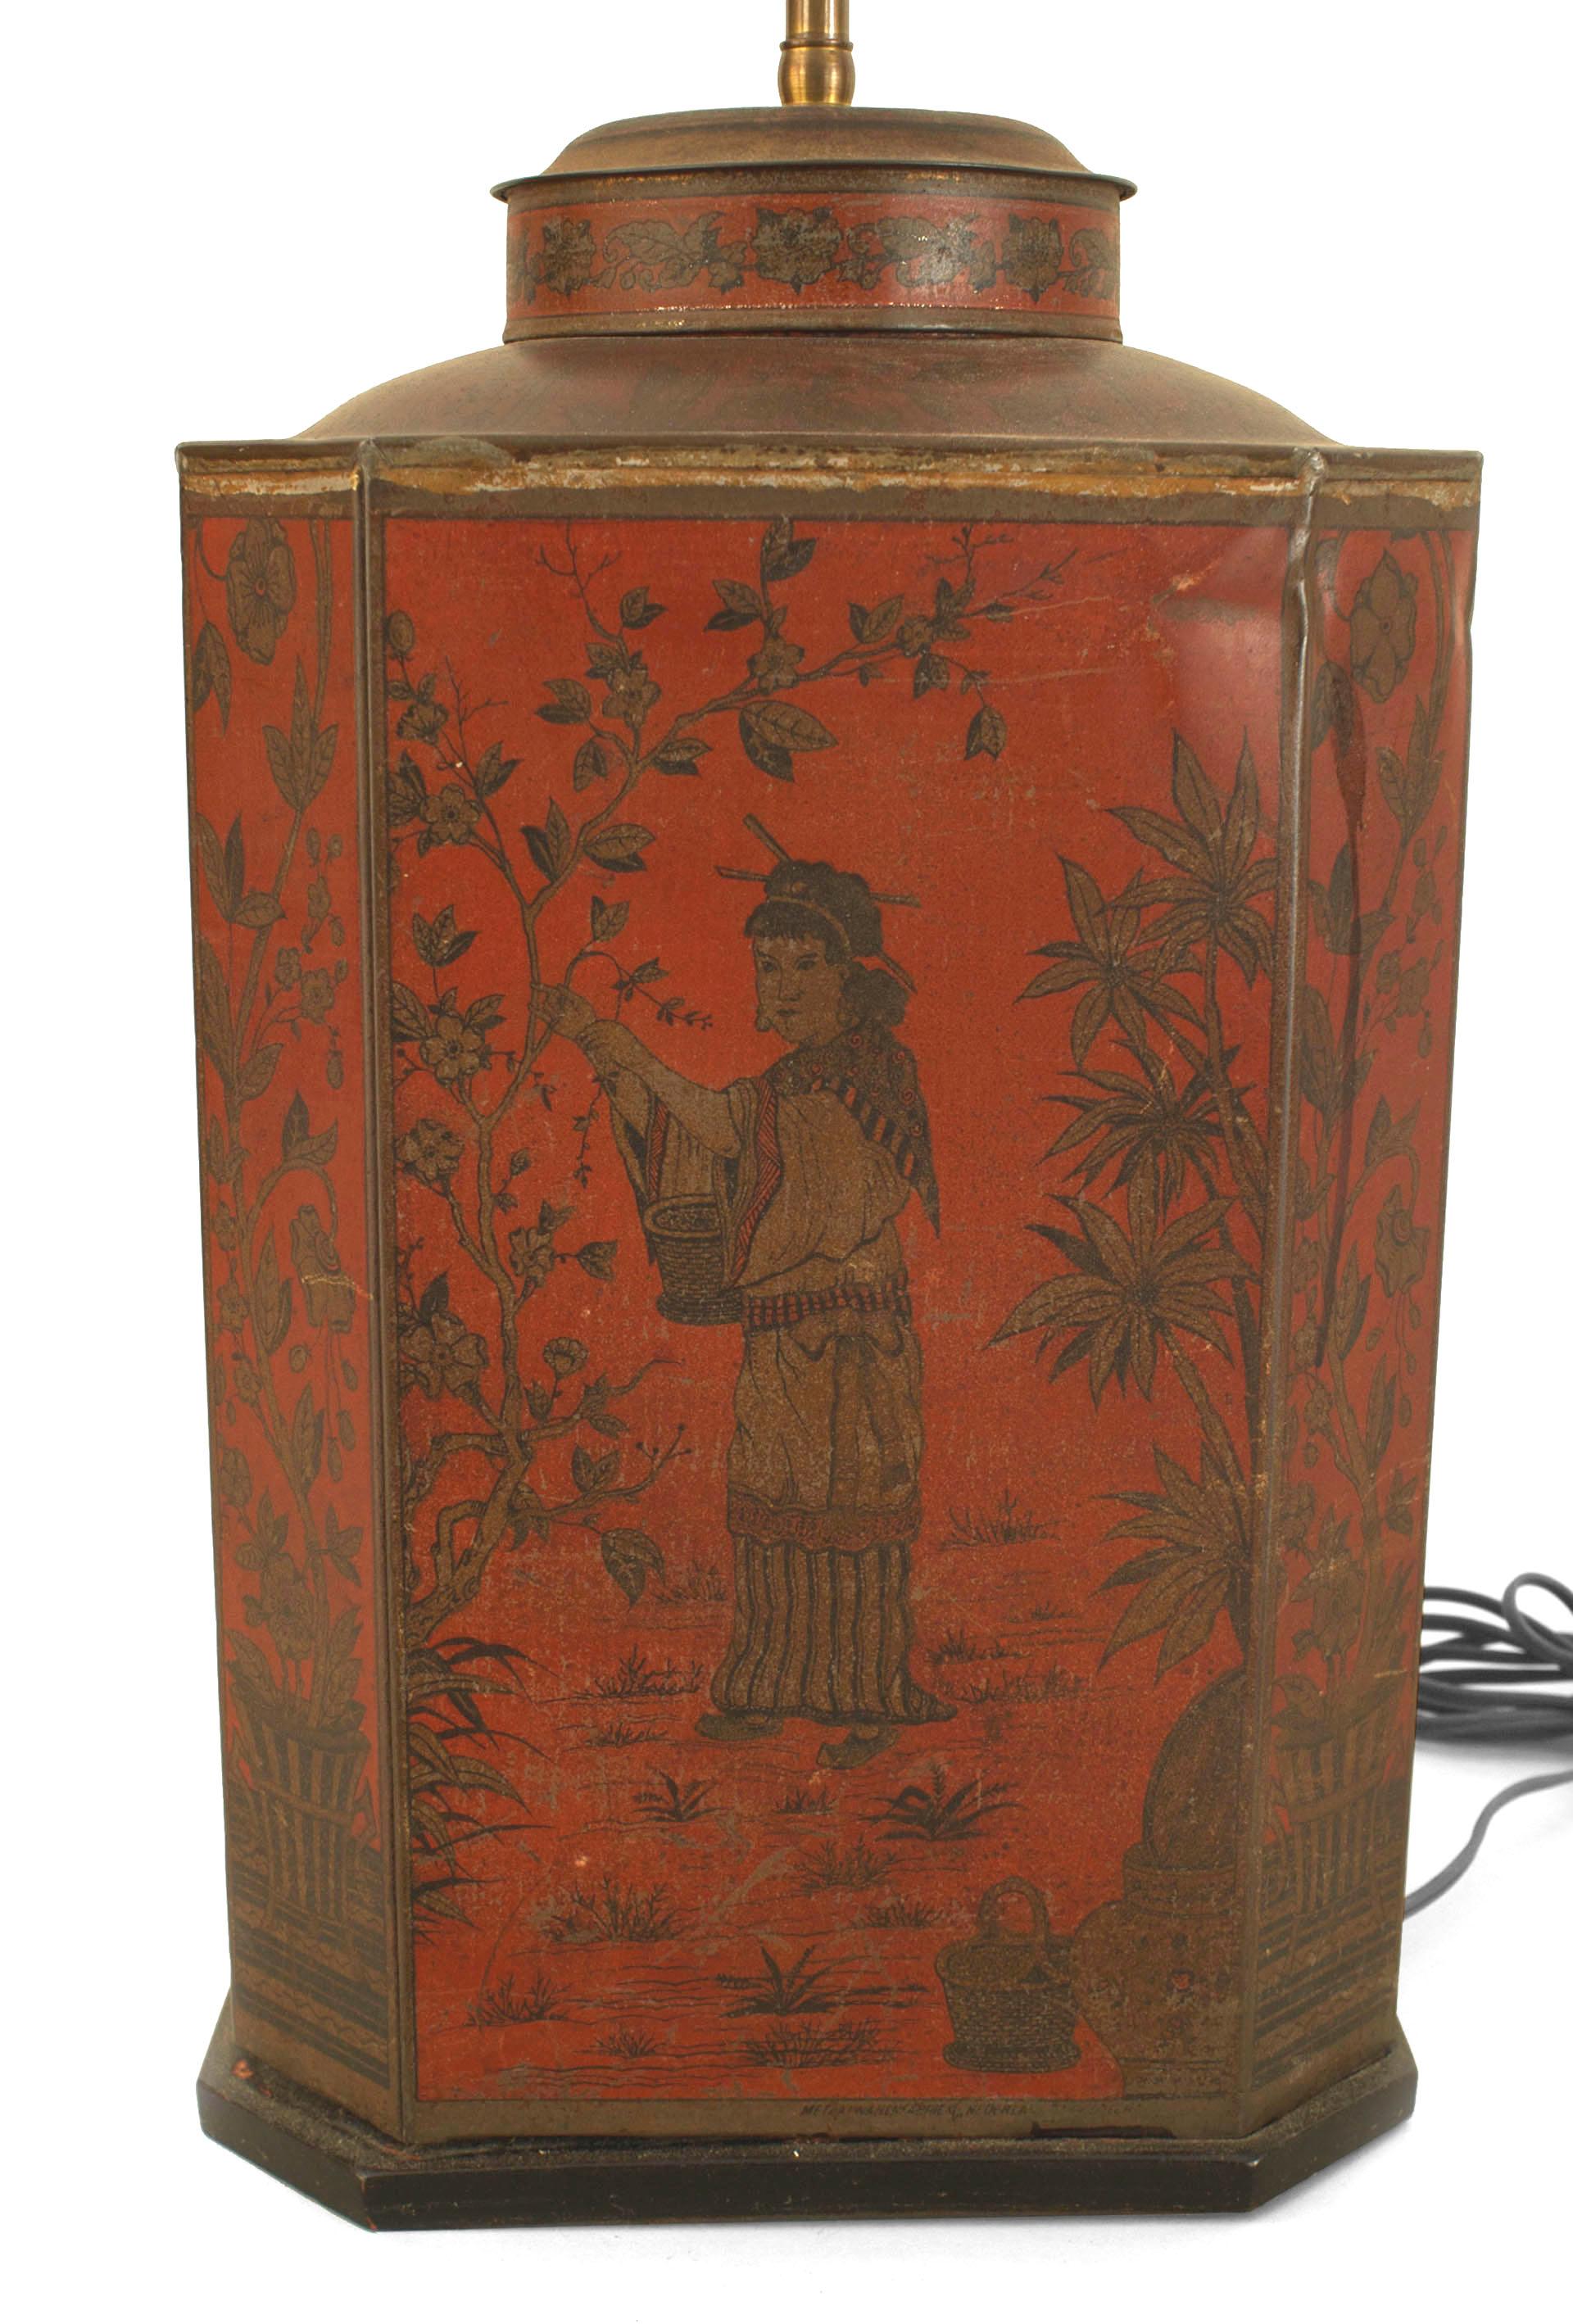 Boîte à thé de forme carrée de style victorien anglais (20e siècle), décorée de tole rouge et de Chinoiserie, montée comme une lampe.